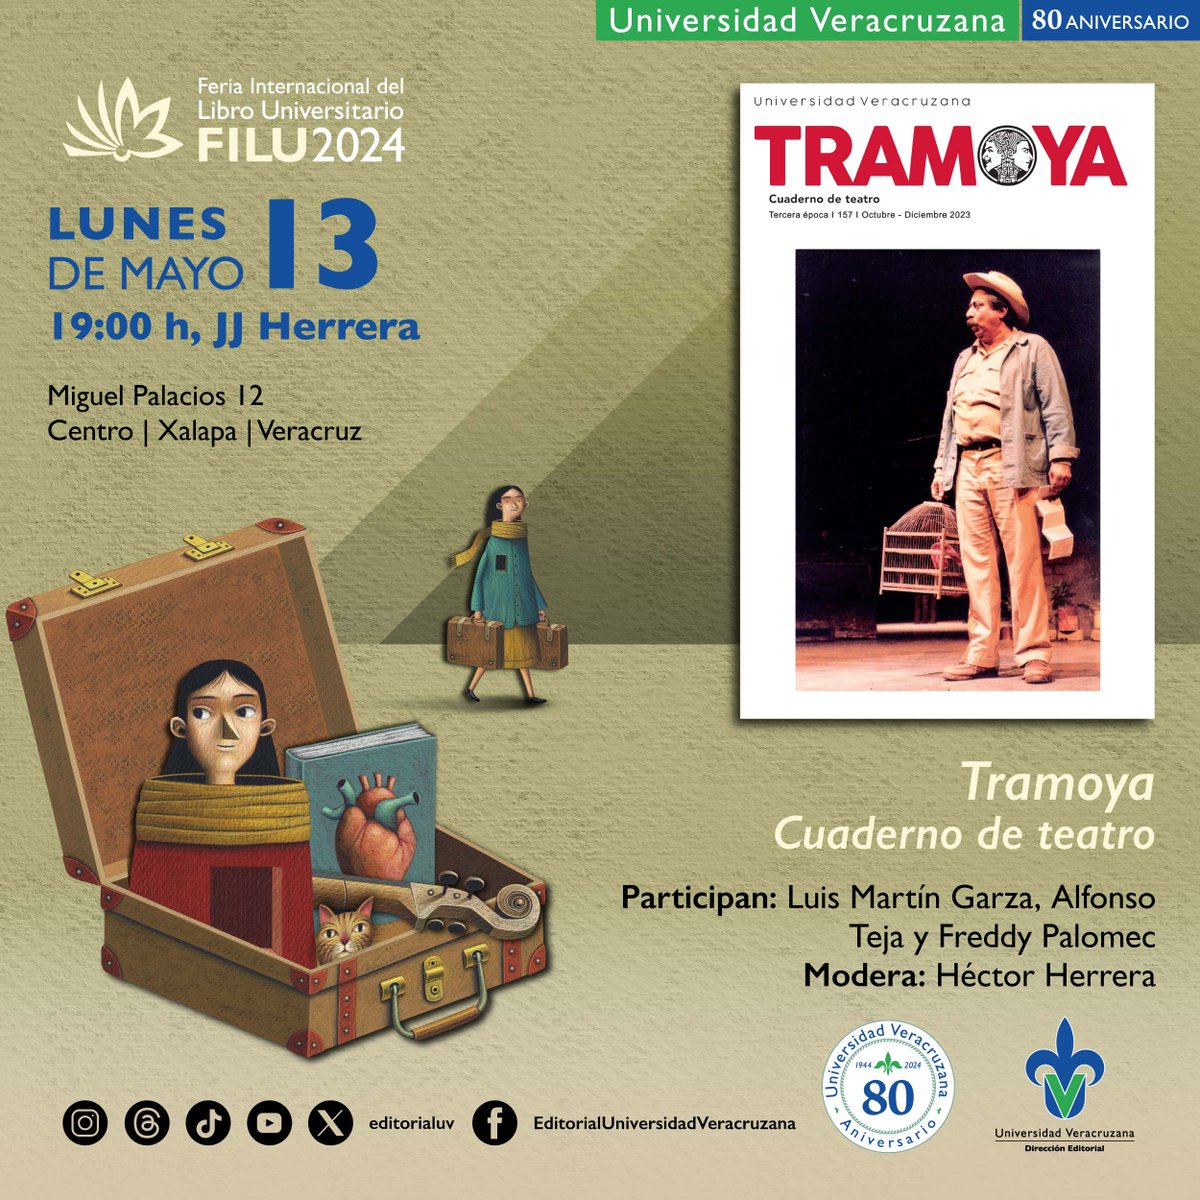 Si te gusta el teatro te recomendamos asistir a la presentación del número 157 de la revista Tramoya, que llevaremos a cabo en @FILU_UV. 🎭📚 📆 13 de mayo ⌚️ 19:00 h 🏦 Teatro J.J Herrera 📍 Miguel Palacios 12, Centro | #Xalapa #EditorialUV #FILU2024